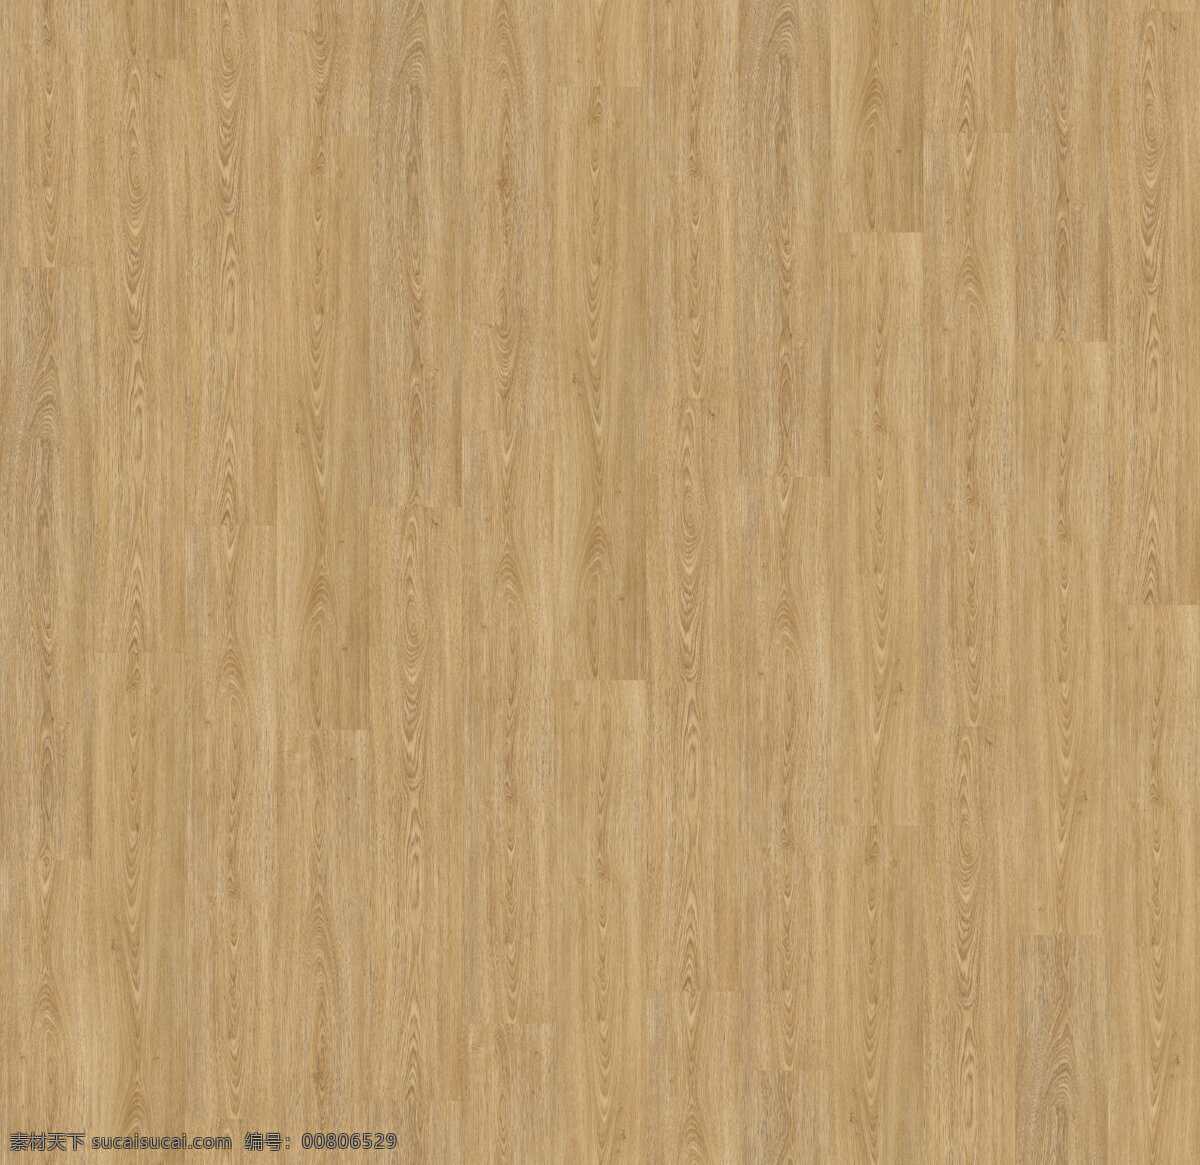 通用 浅黄色 木地板 贴图 家具网 室内装饰 木材 素材库 常用地板 素材贴图 通用胡桃木 凹凸贴图纹理 简约 现代 风格